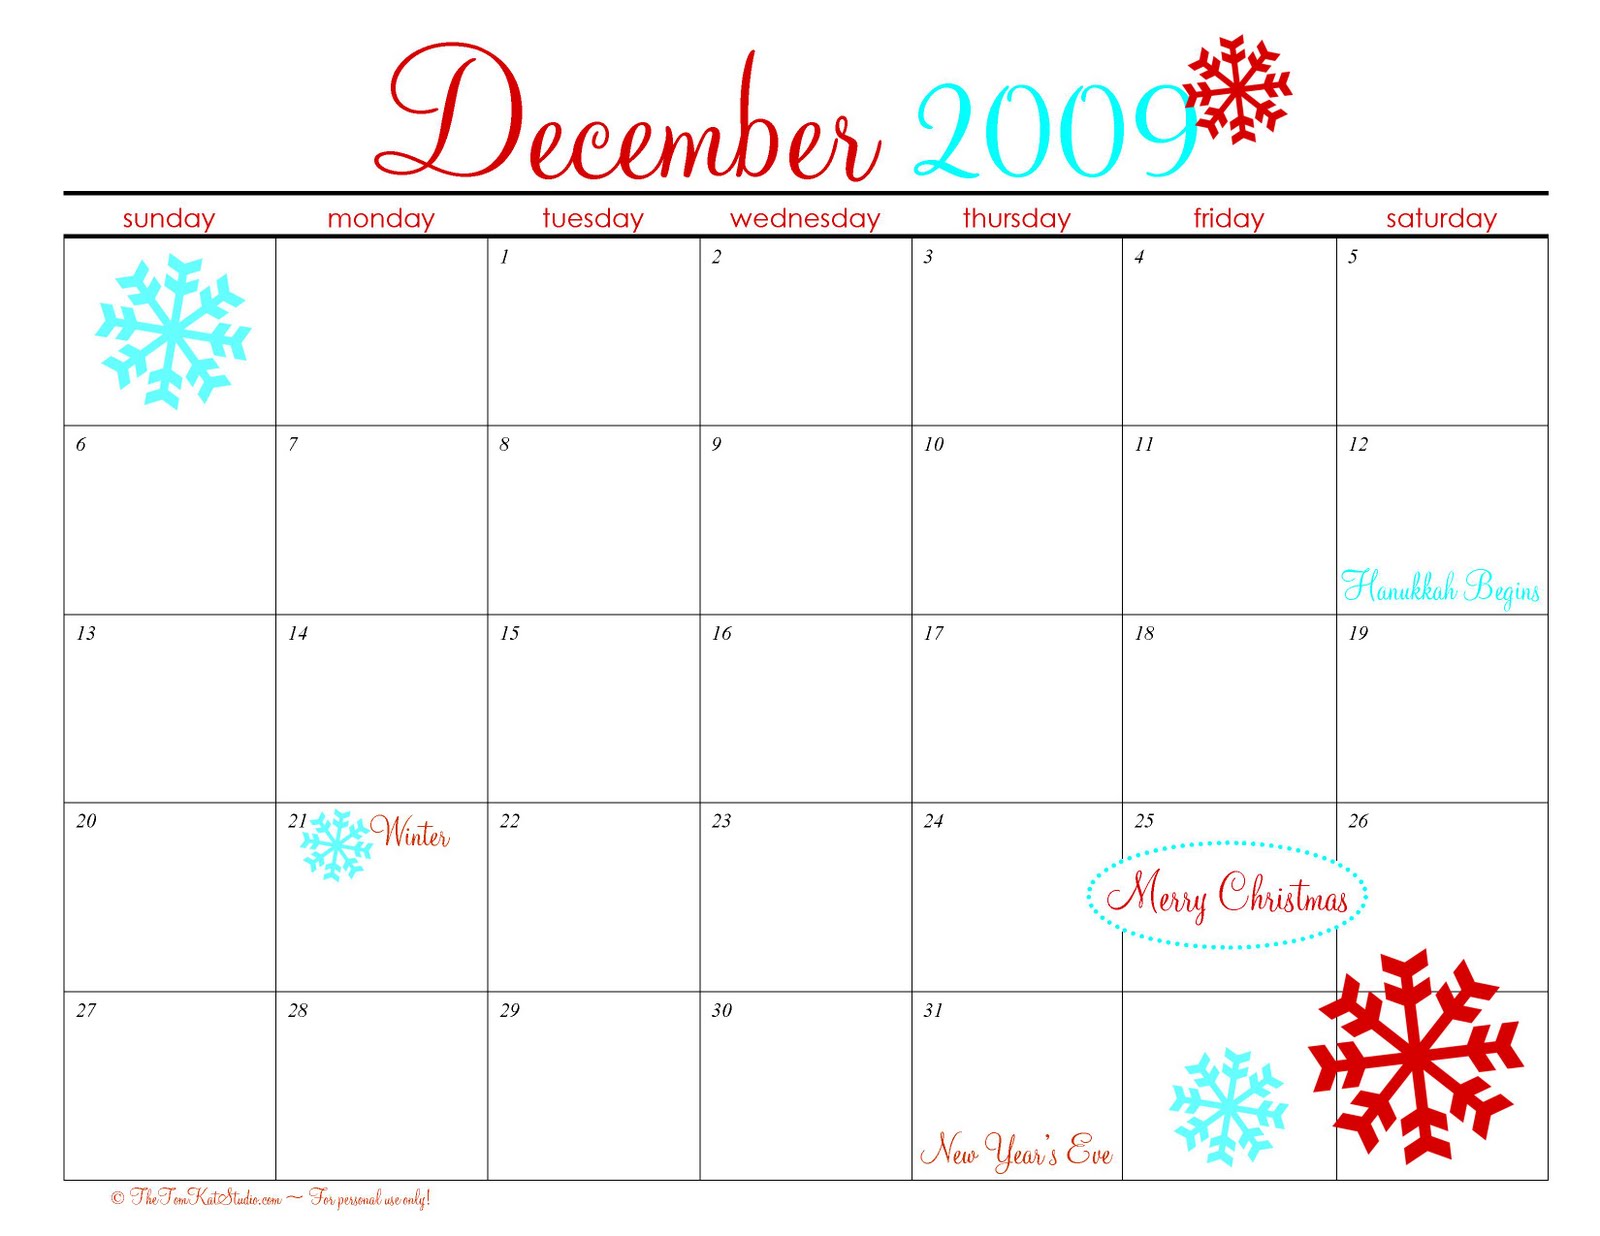 6 Best Images Of December Calendar Free Printable Free Printable Christmas Calendar December